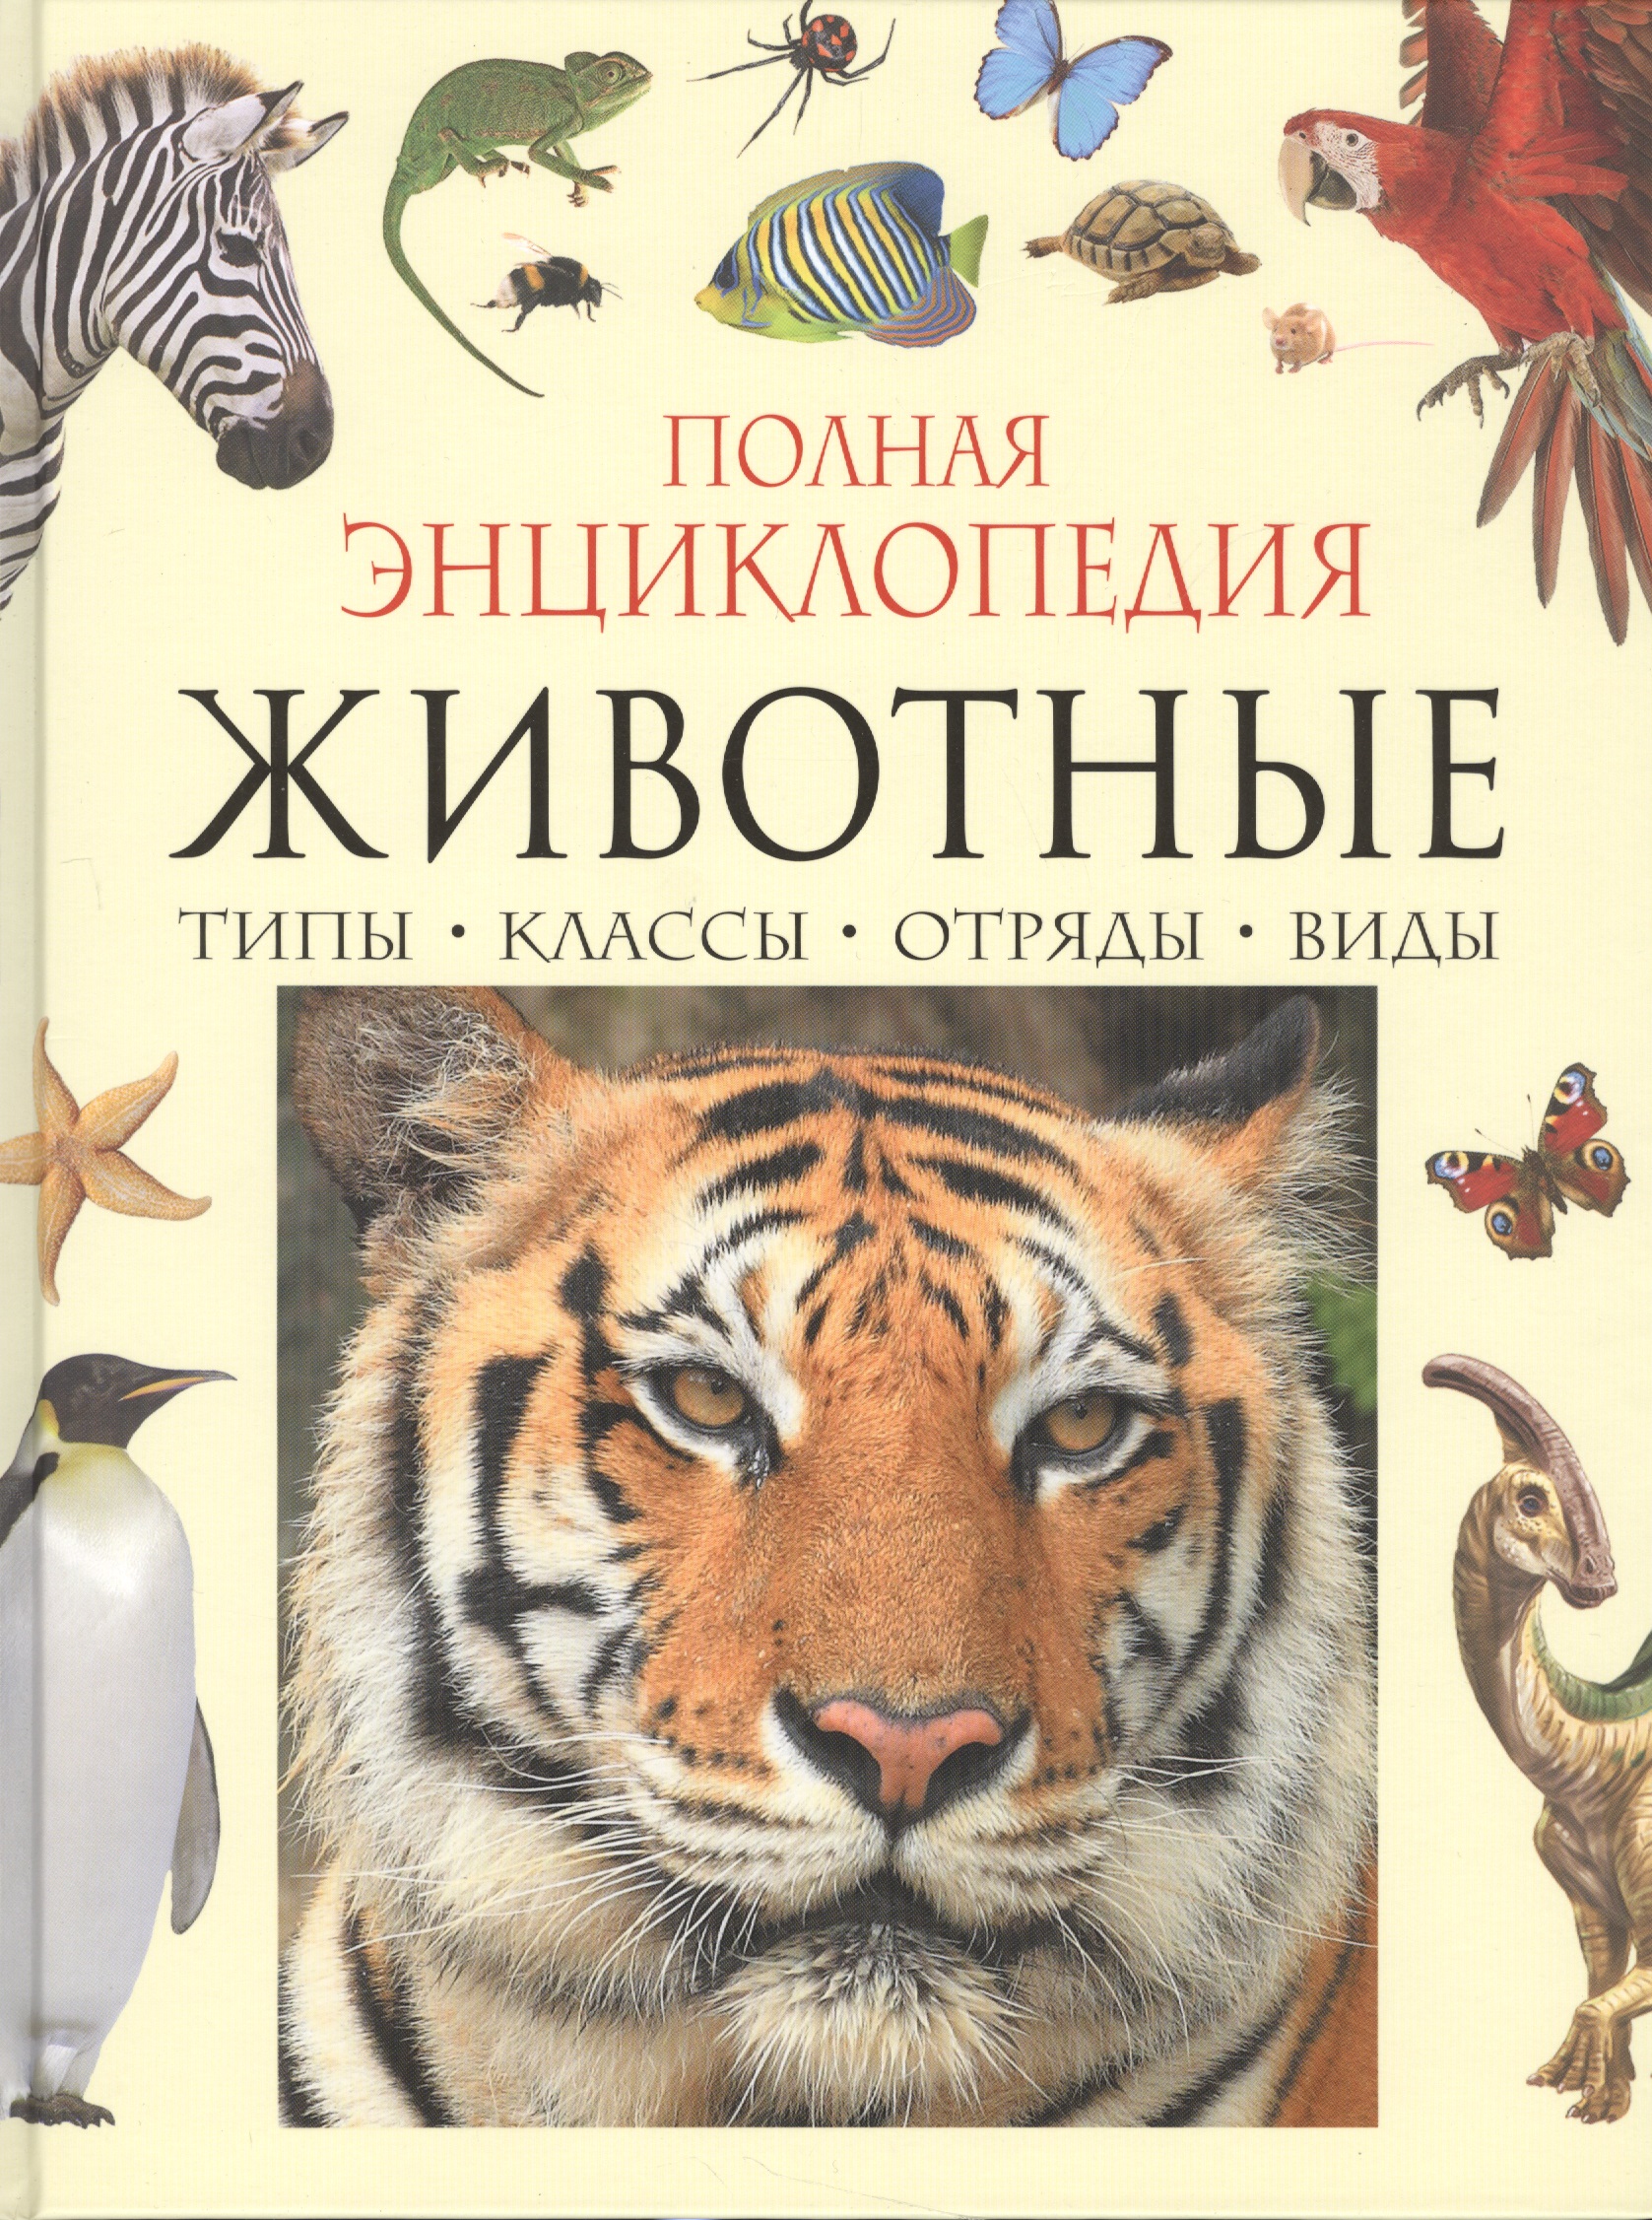 Полная энциклопедия животного мира энциклопедия животного мира